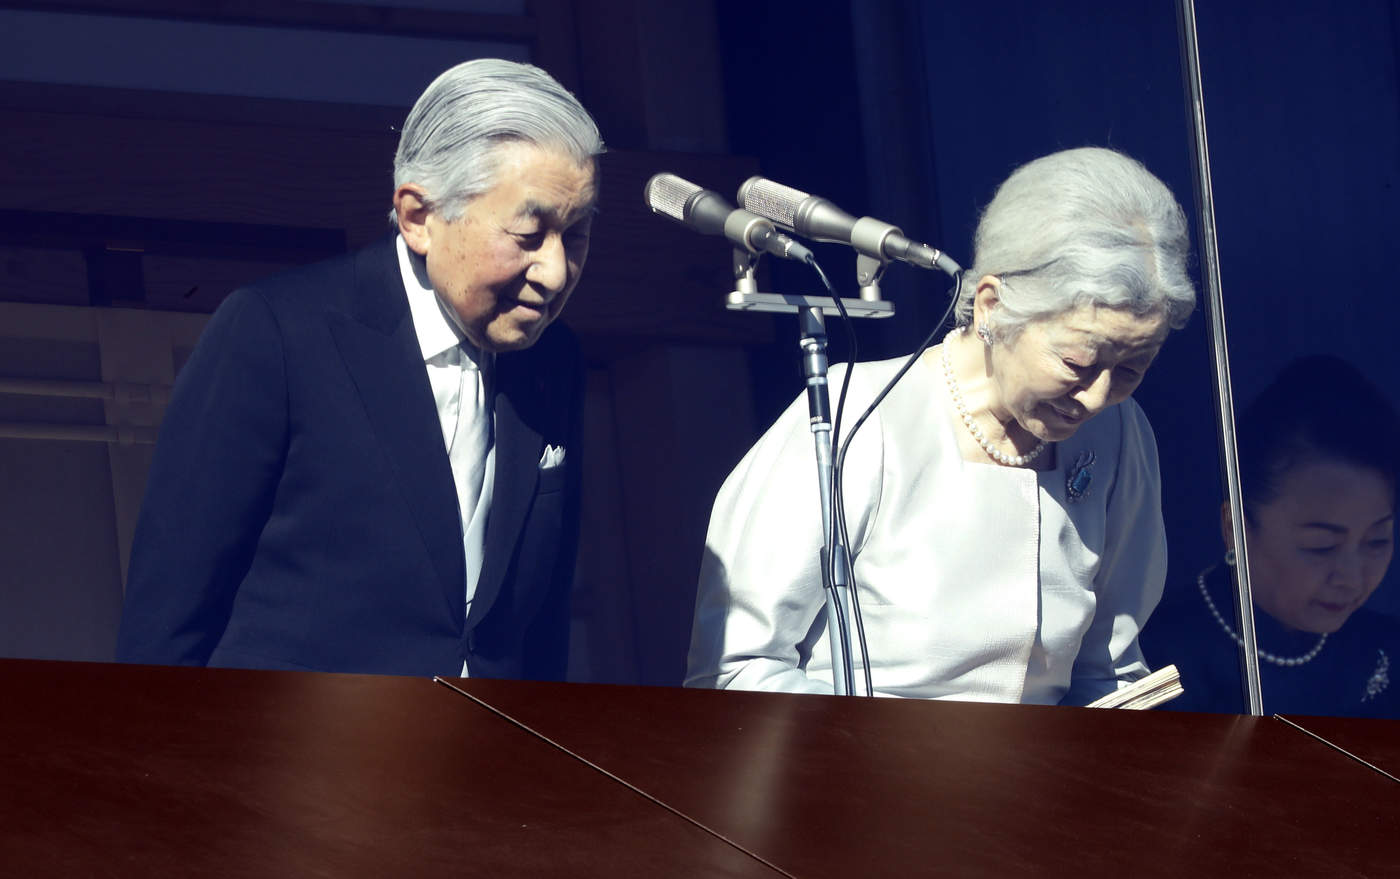 El emperador japonés Akihito emitió ayer su mensaje de año nuevo previo a su dimisión prevista para el 30 de abril. (ARCHIVO)